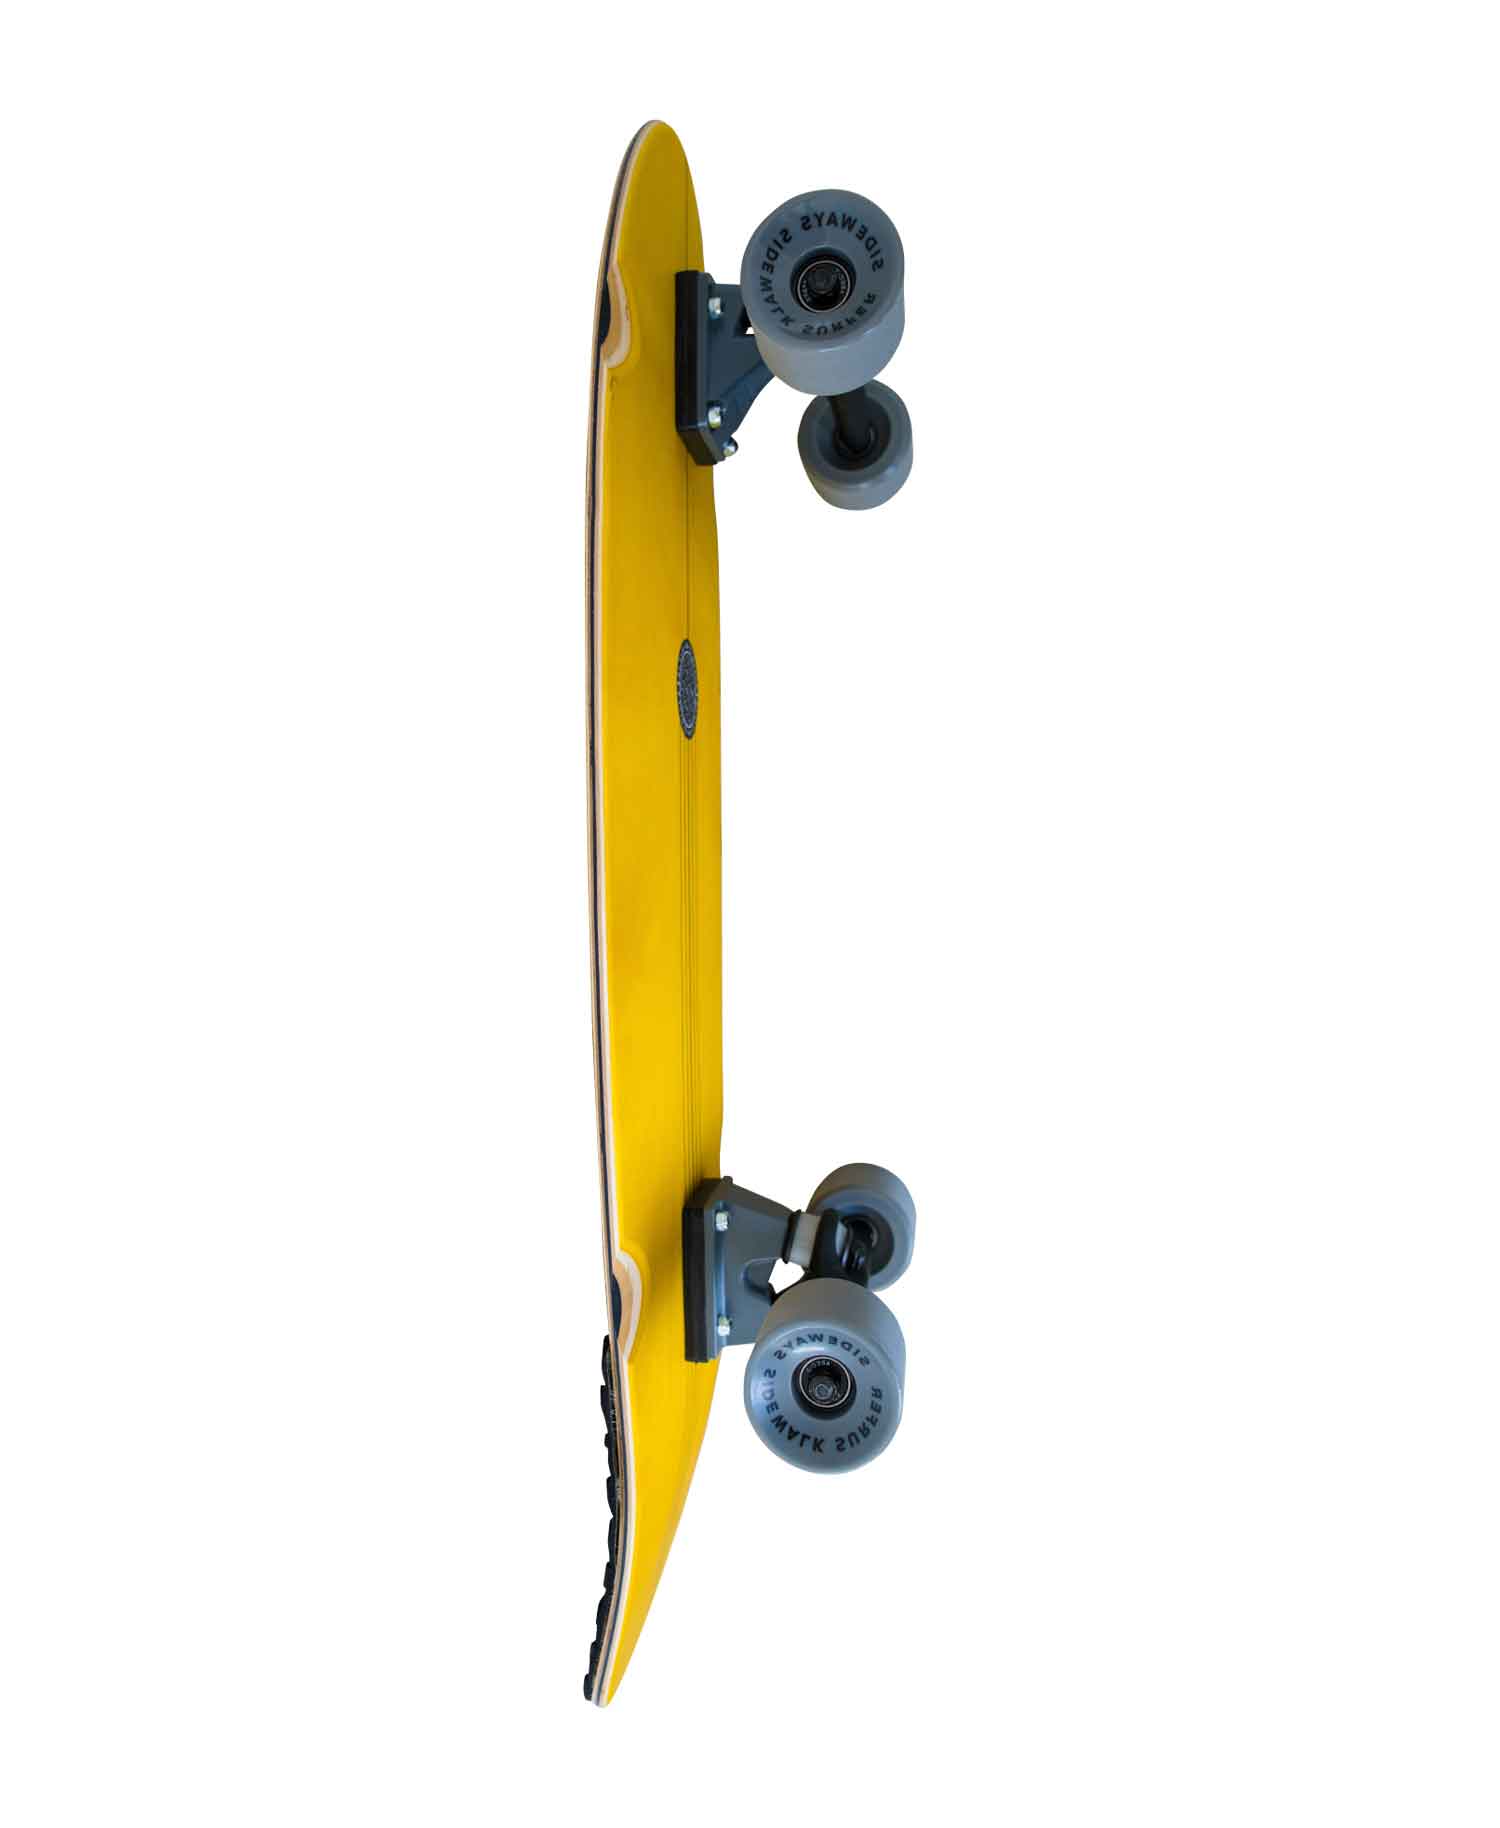 SURF SKATE SKATEBOARD - CHOSEN ONE 31"